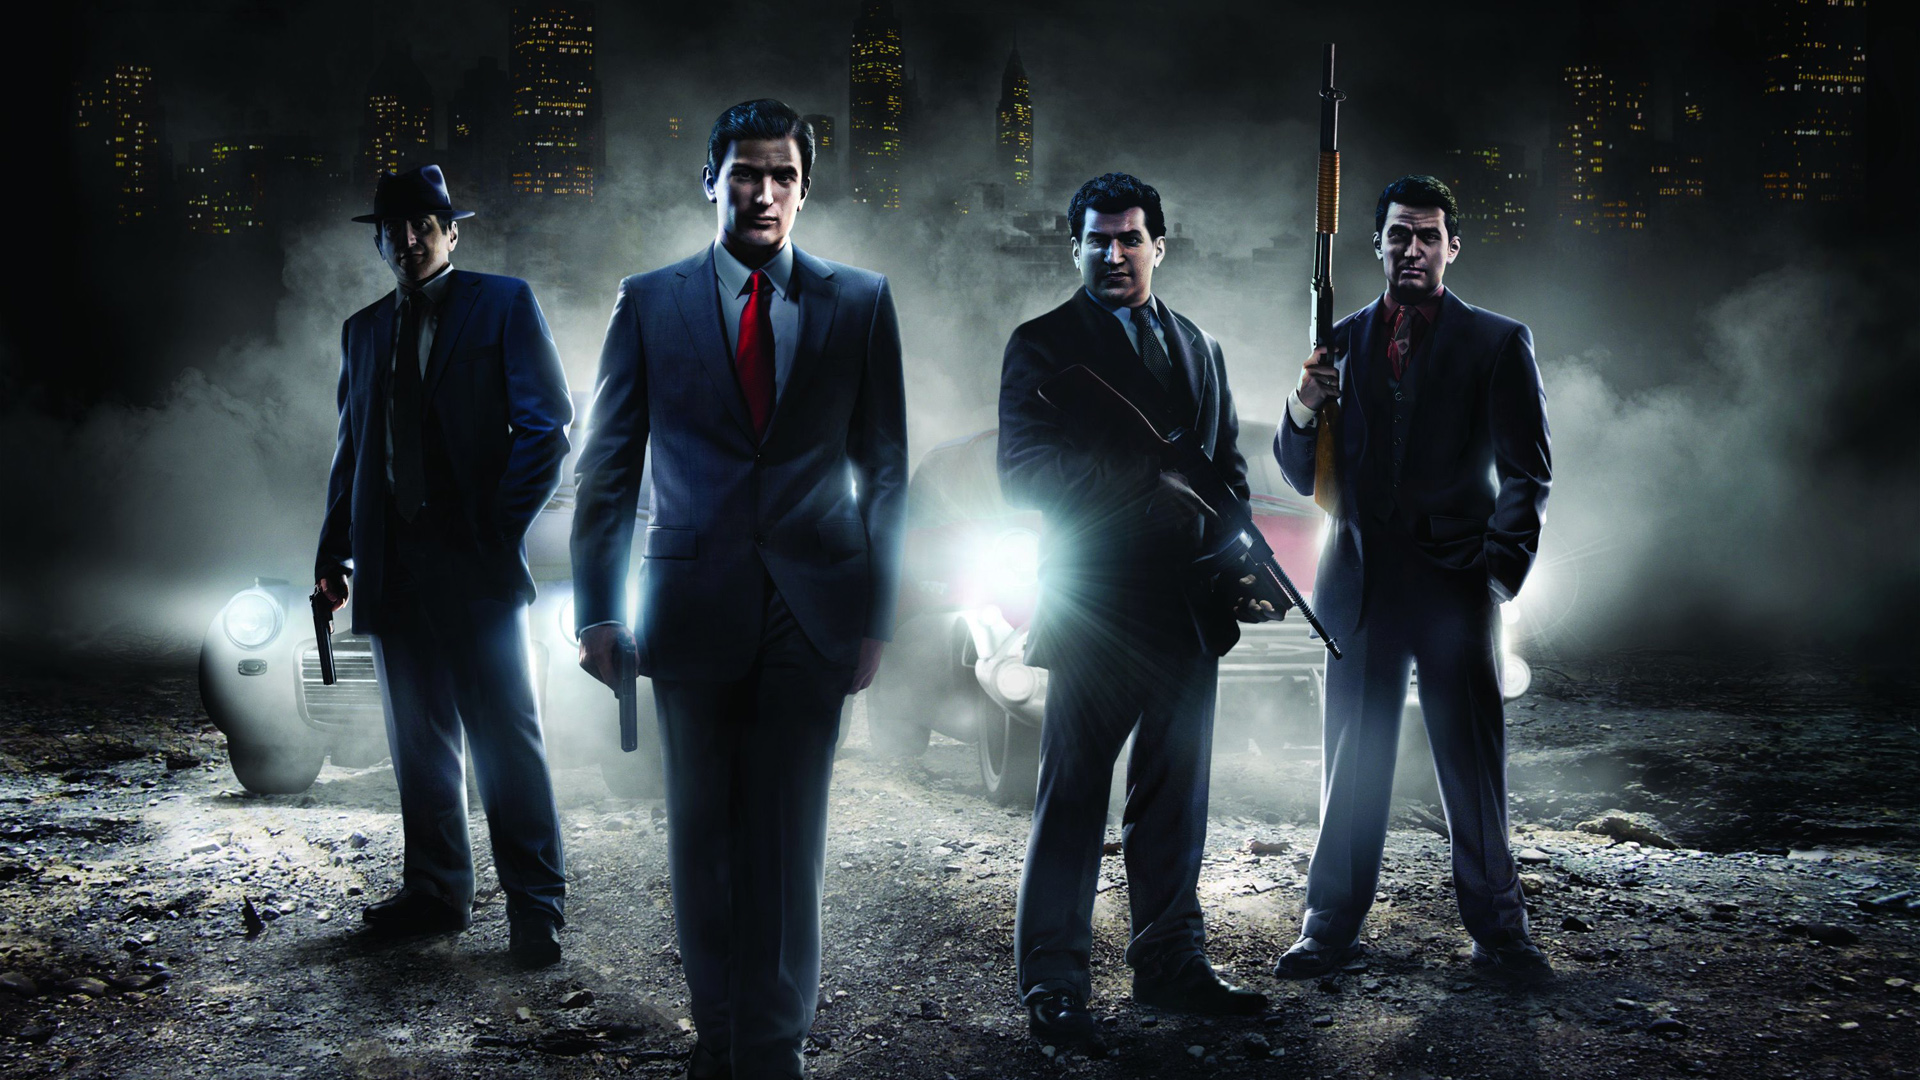 Mafia: Trilogy annunciato ufficialmente con un teaser trailer